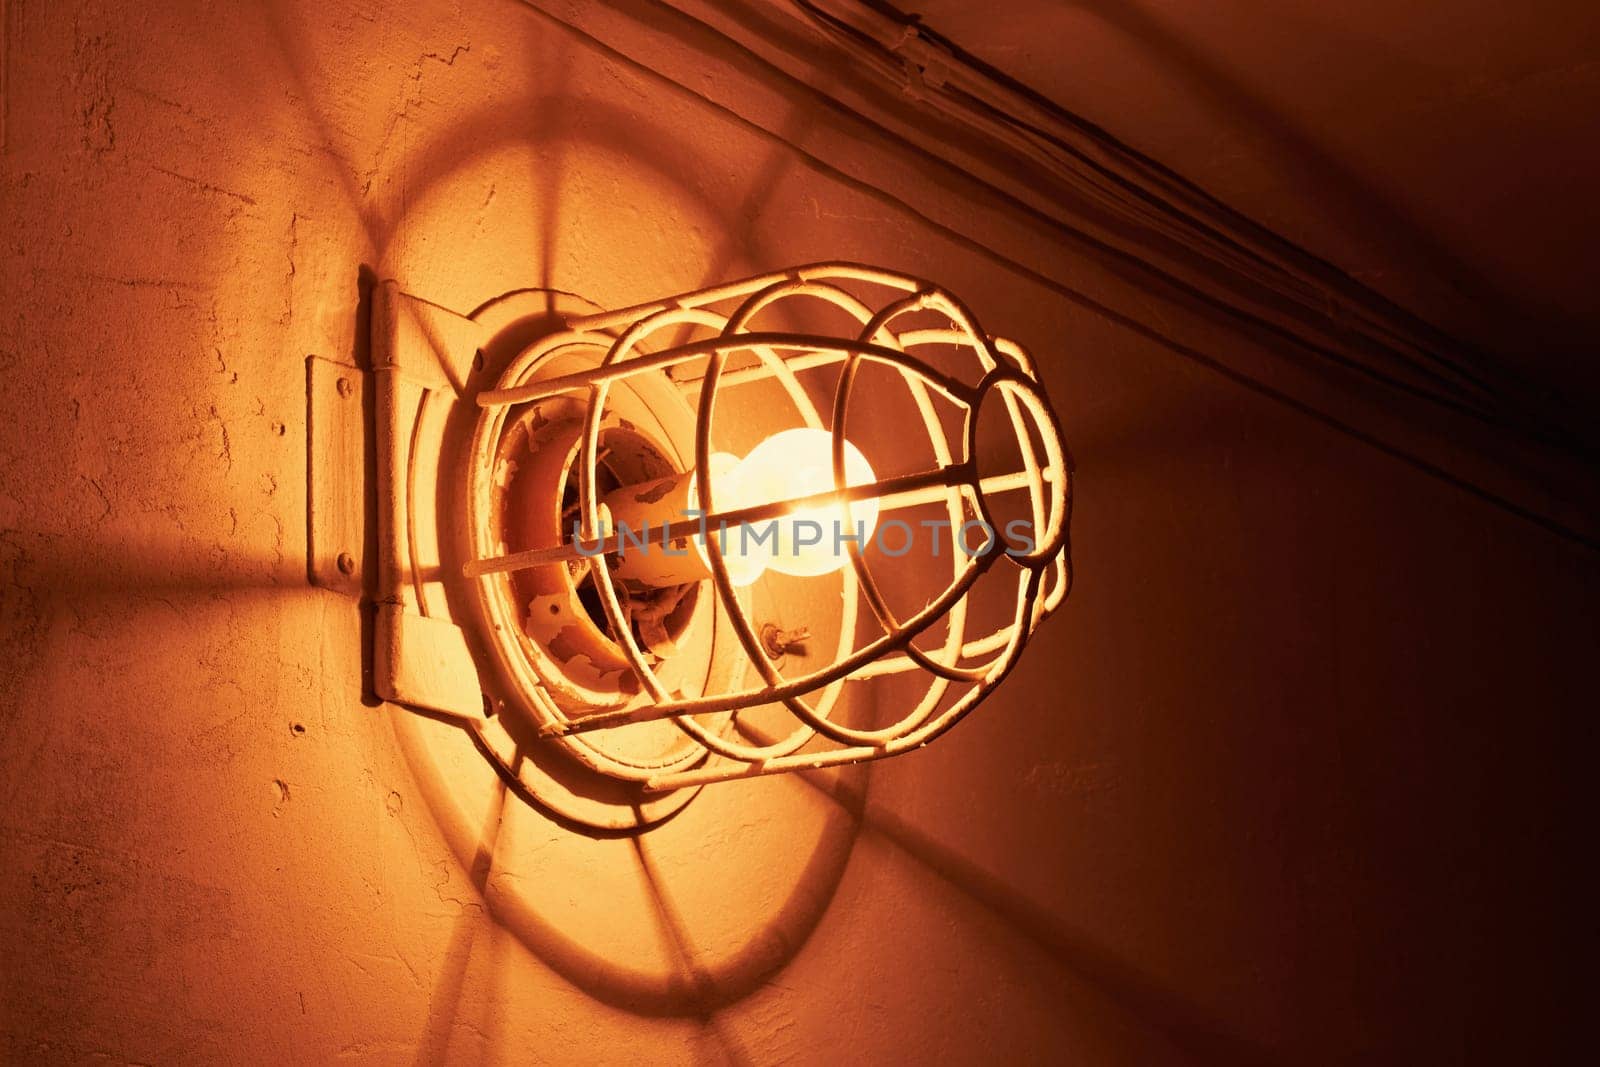 Luminous incandescent lamp by DAndreev